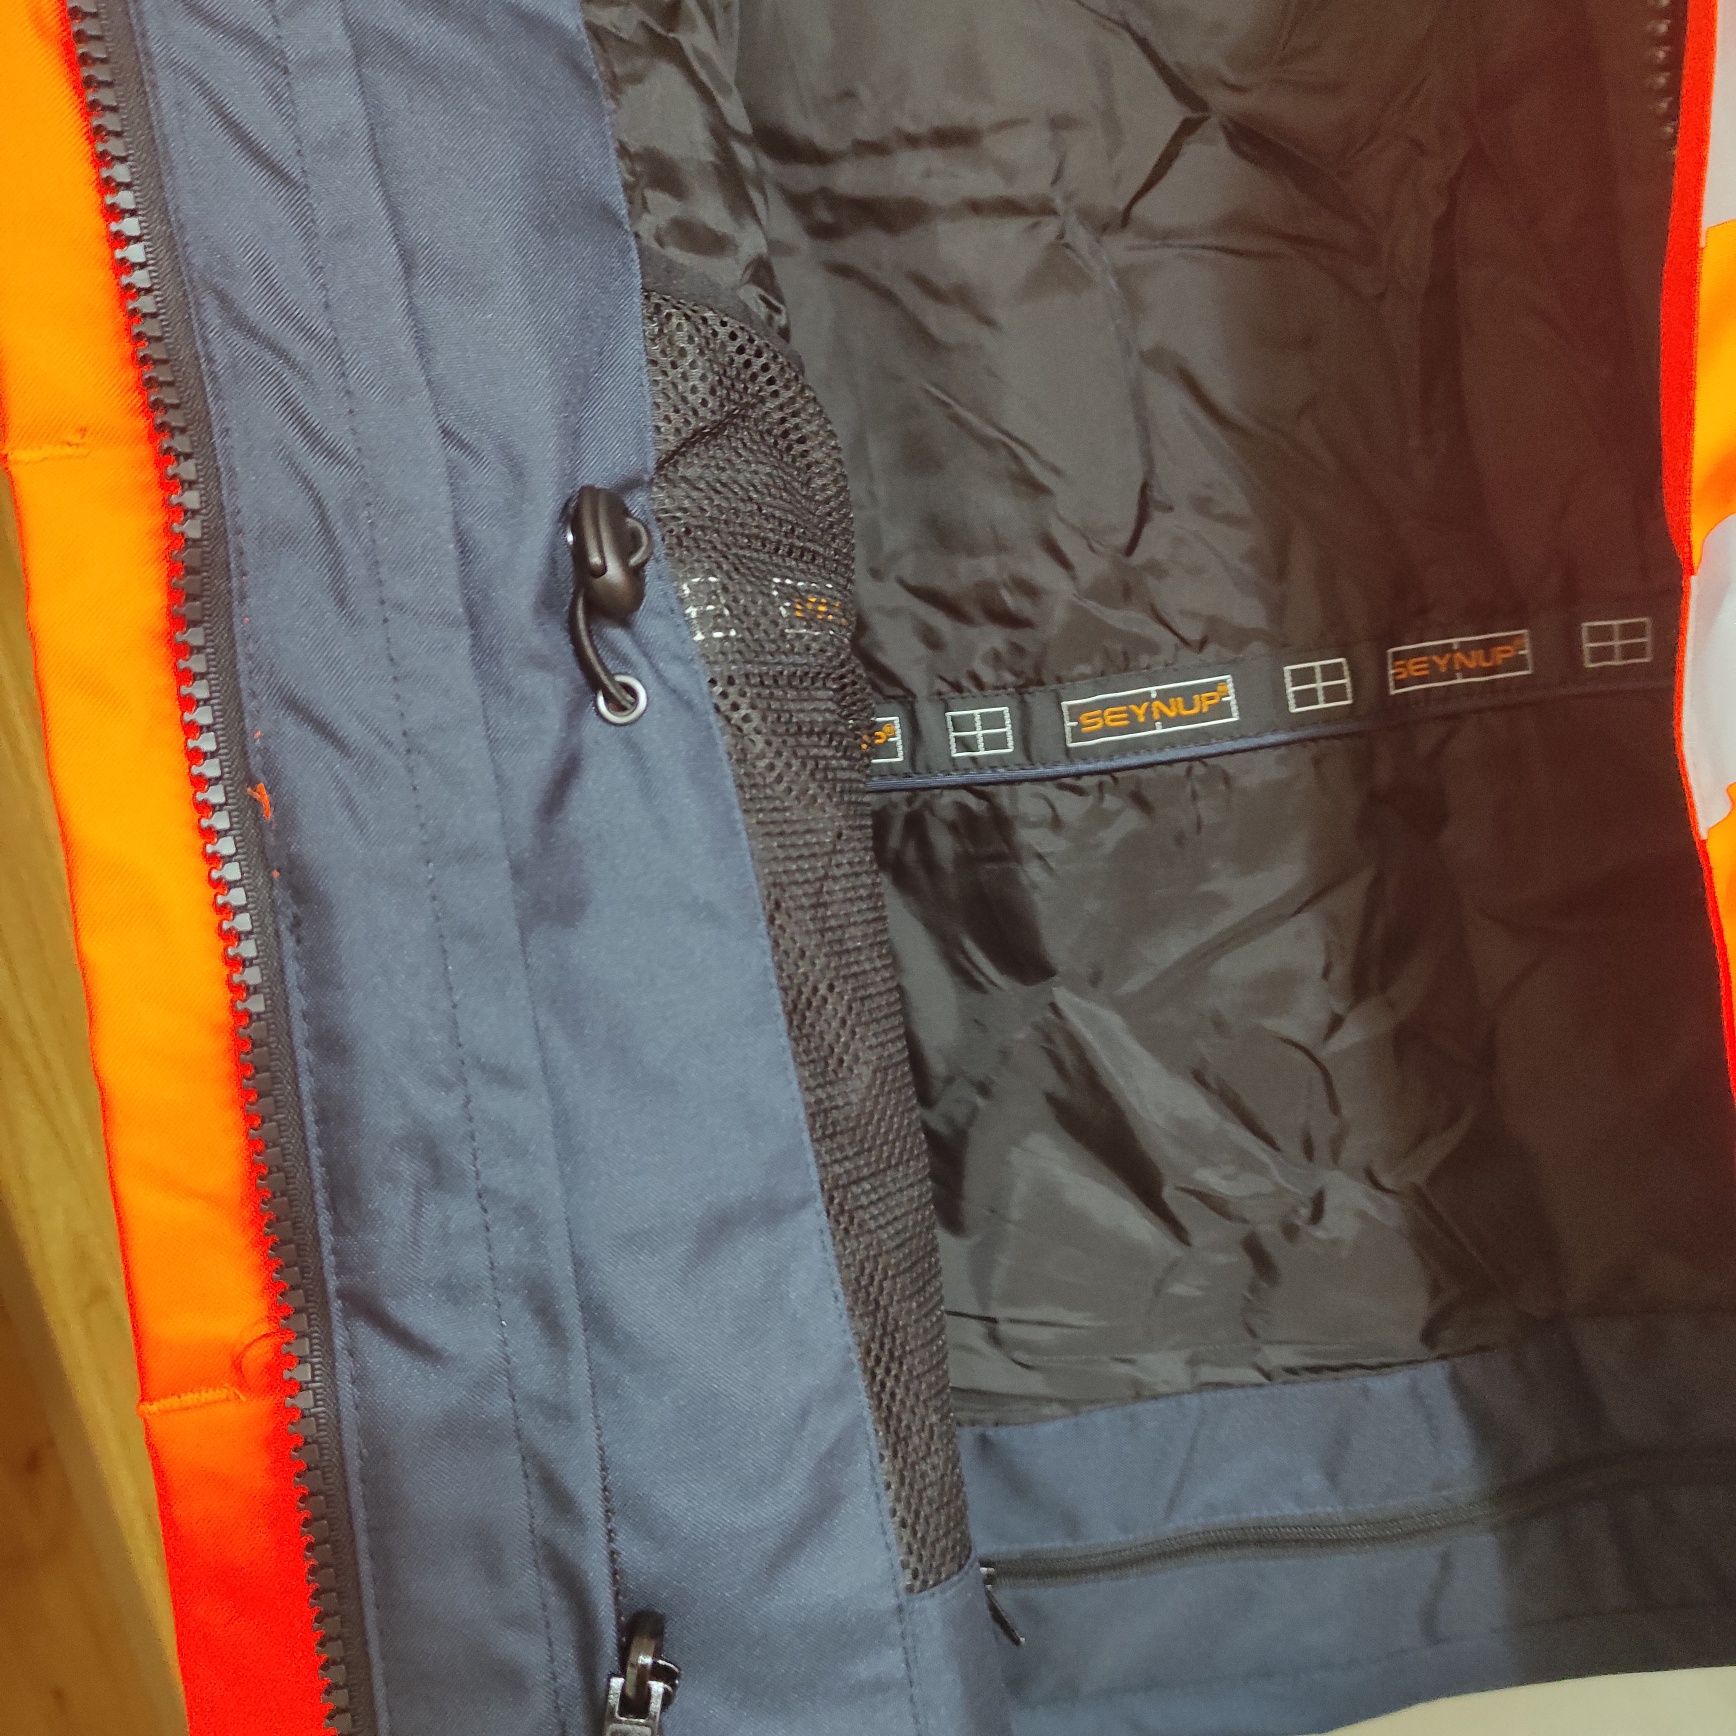 Kurtka+spodnie XL 3M Scotchlite ubiór roboczy ochronny Reflective Mat